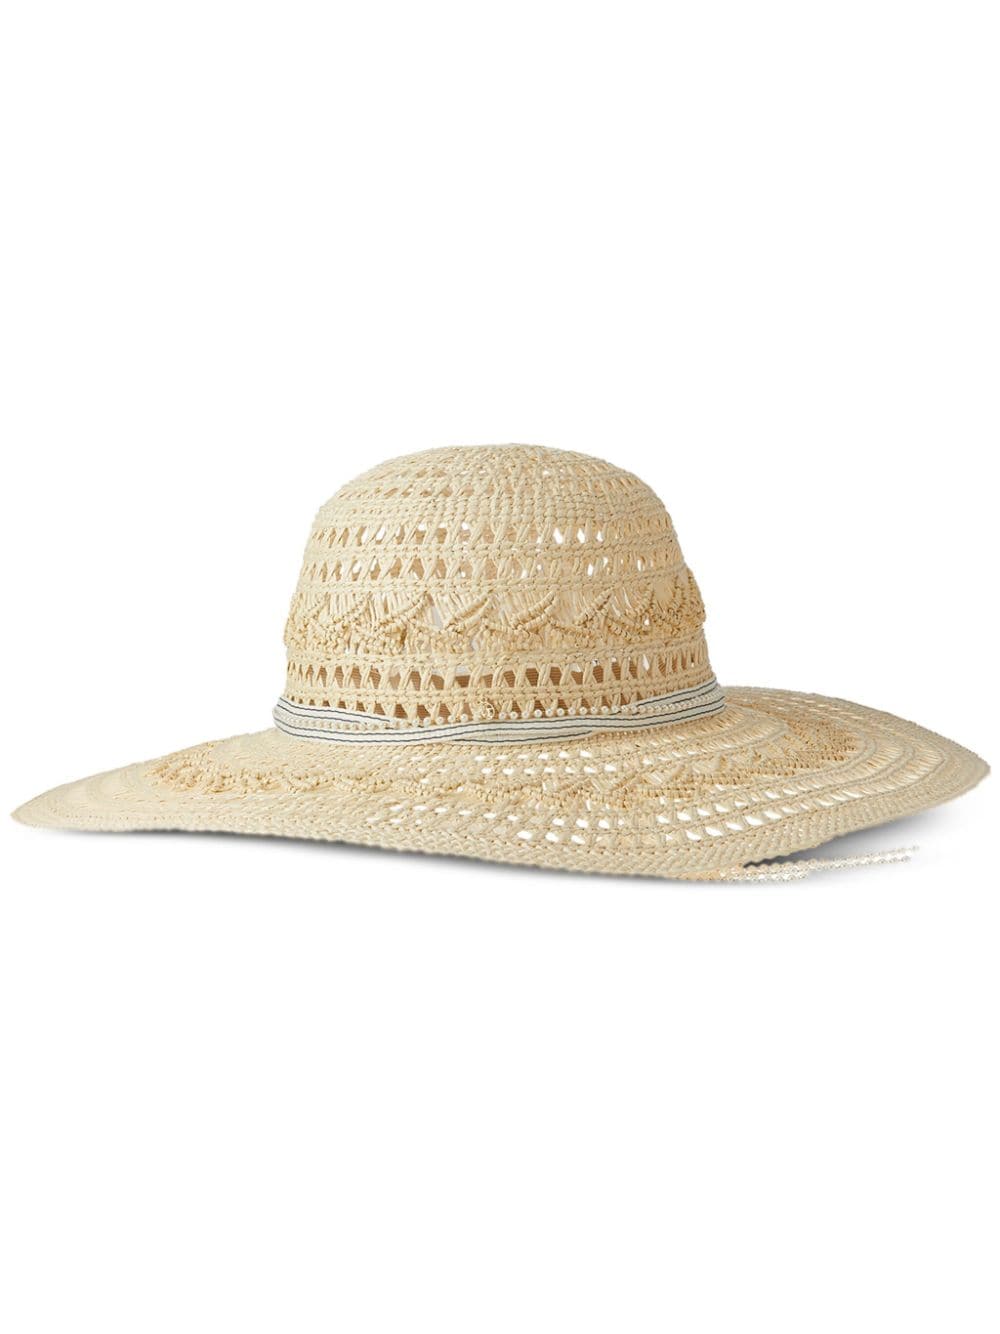 Maison Michel Blanche straw hat - Neutrals von Maison Michel